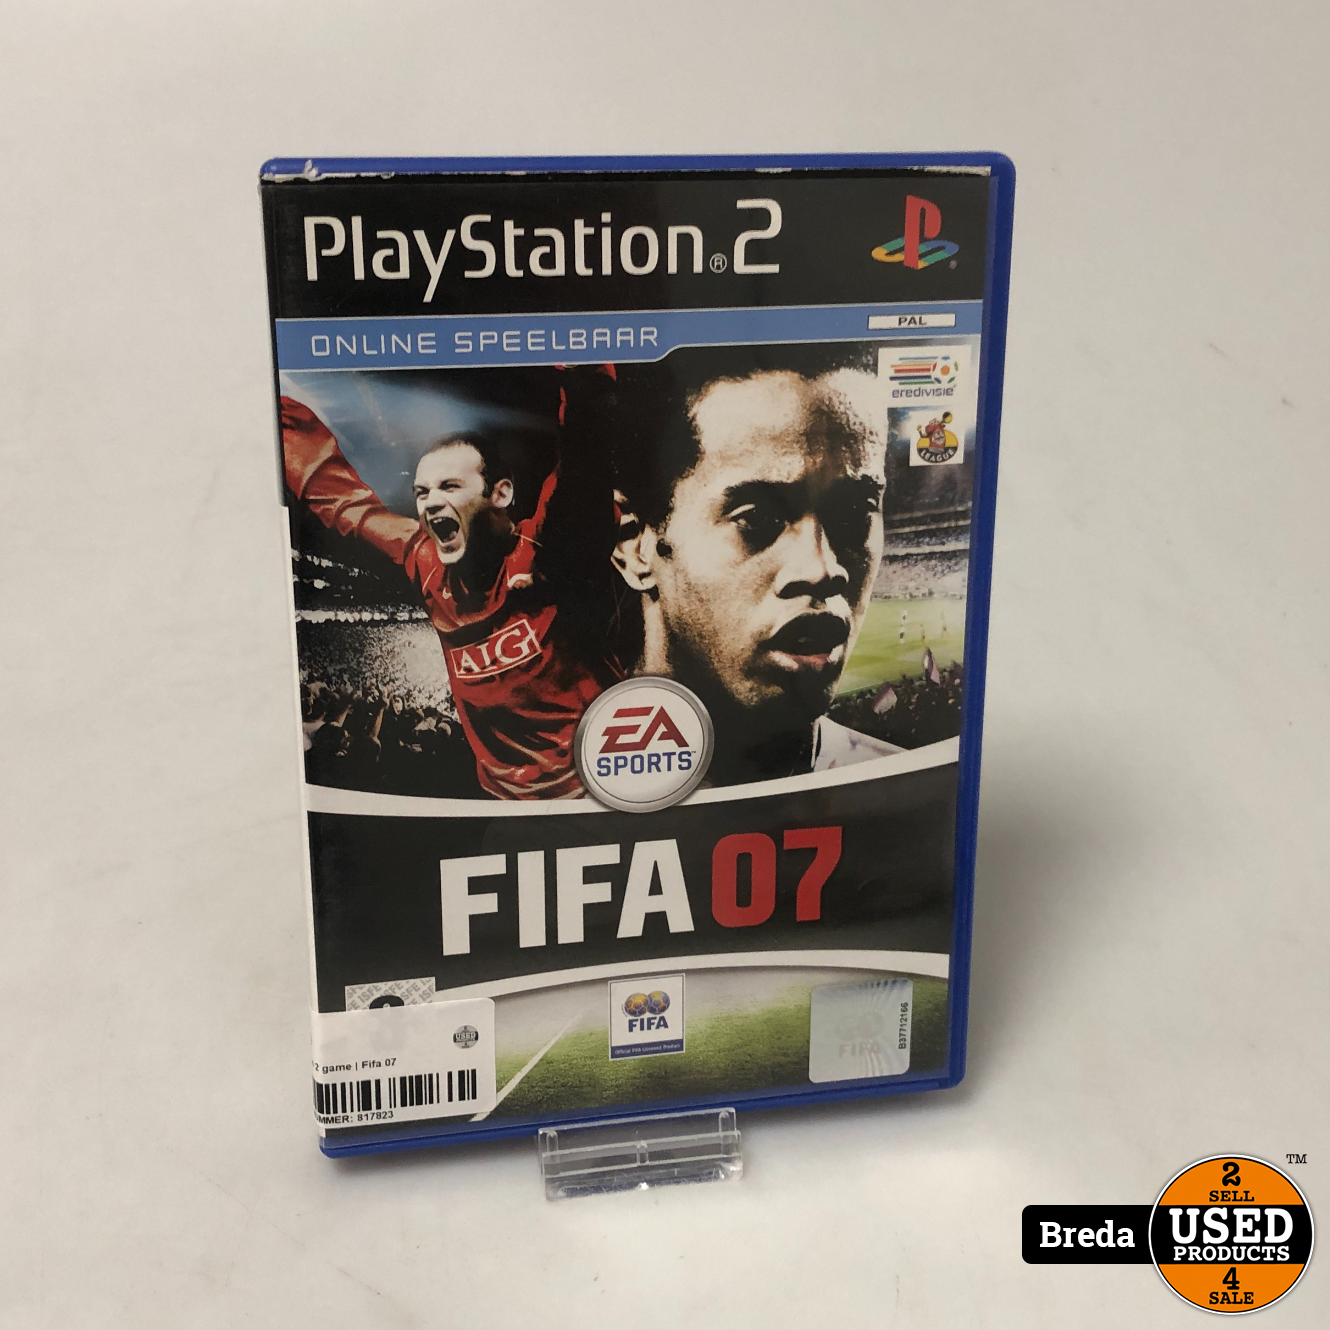 afbreken Krankzinnigheid emotioneel Playstation 2 spel | Fifa 07 - Used Products Breda